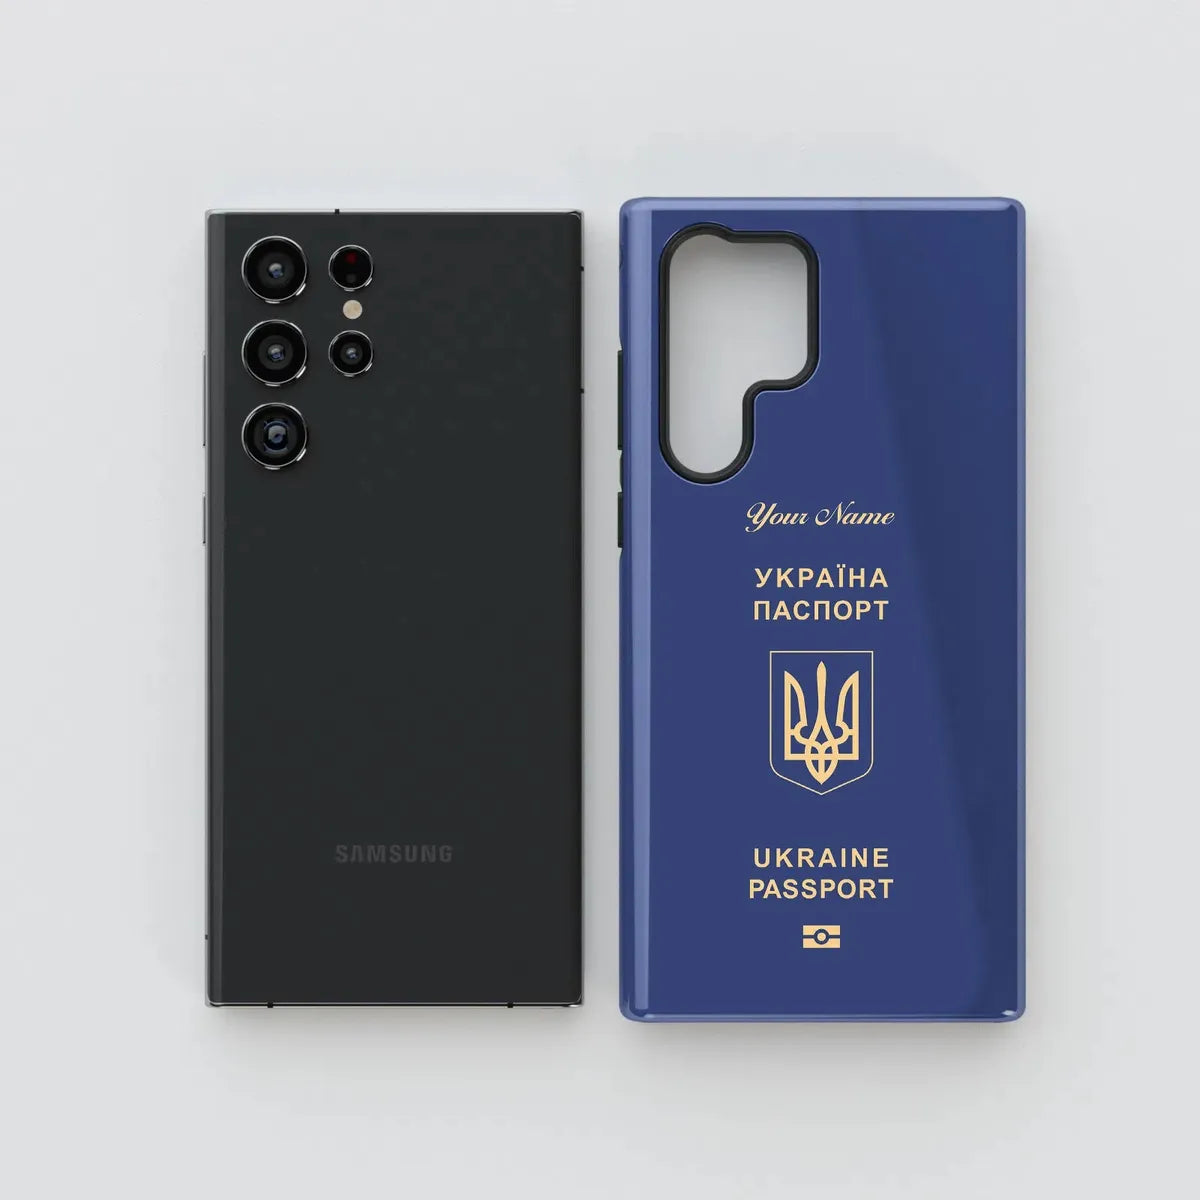 Ukraine Passport - Samsung Galaxy S Case